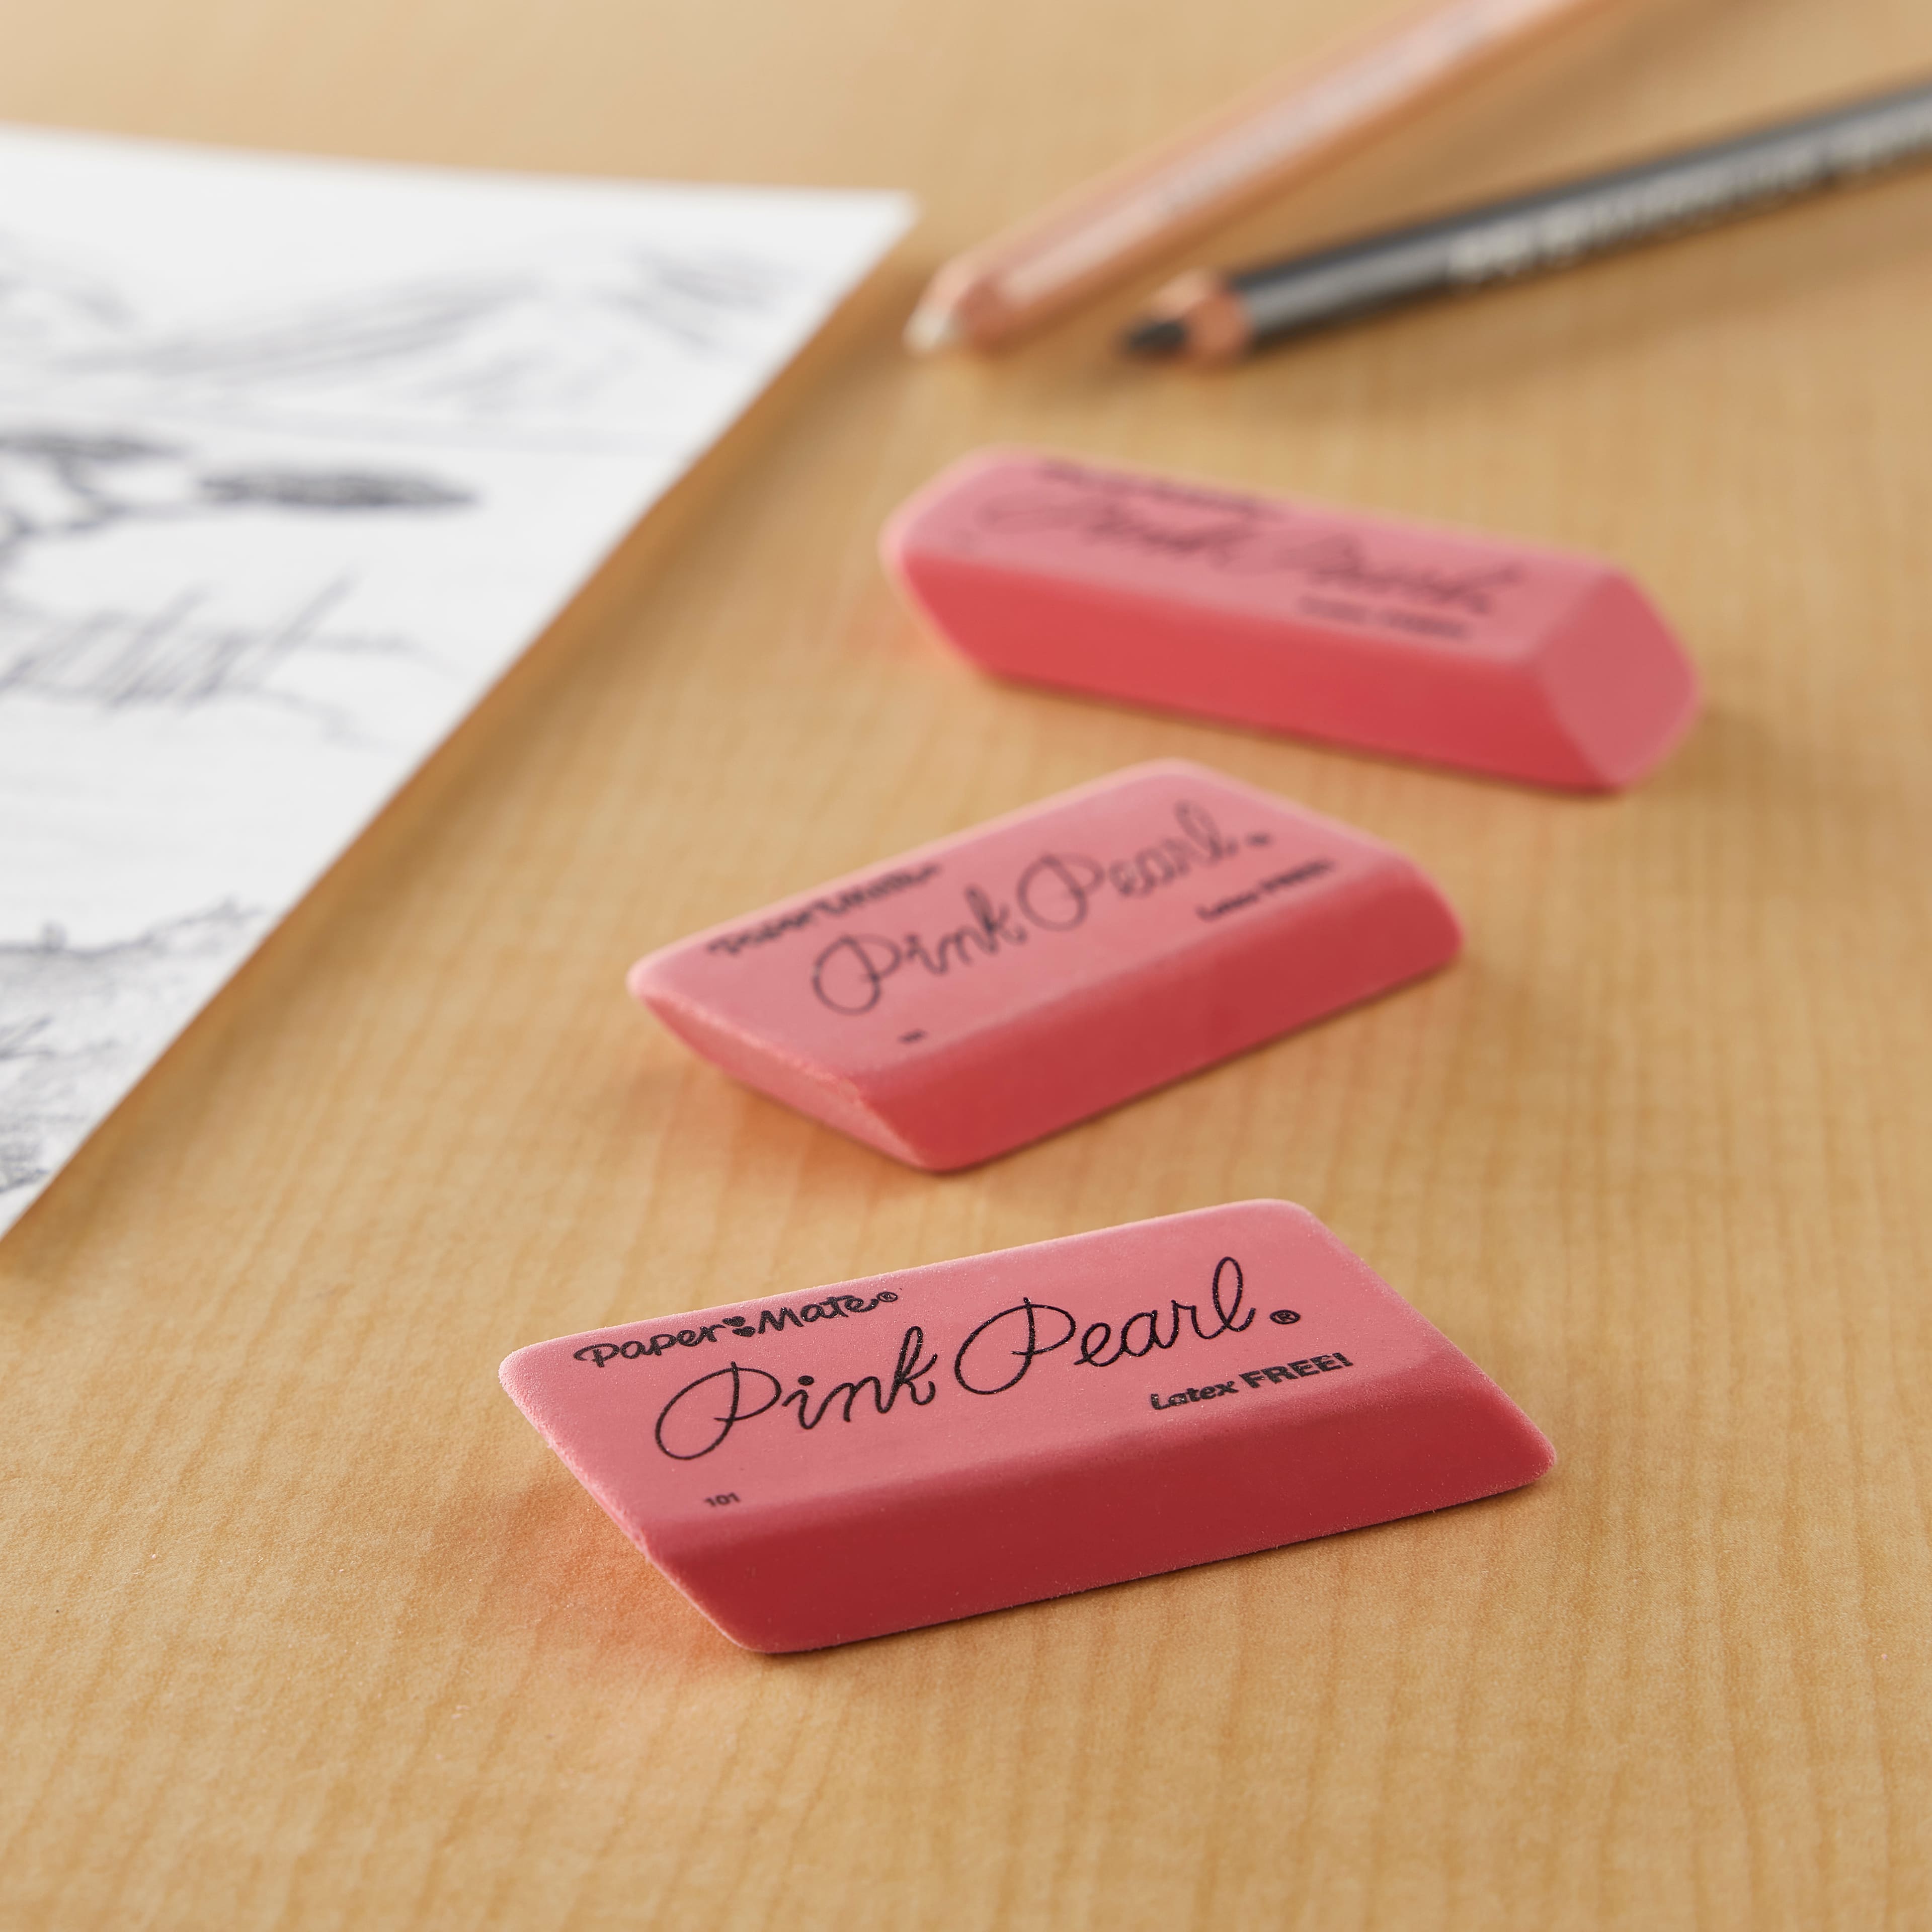 Paper Mate&#xAE; Pink Pearl&#xAE; Erasers